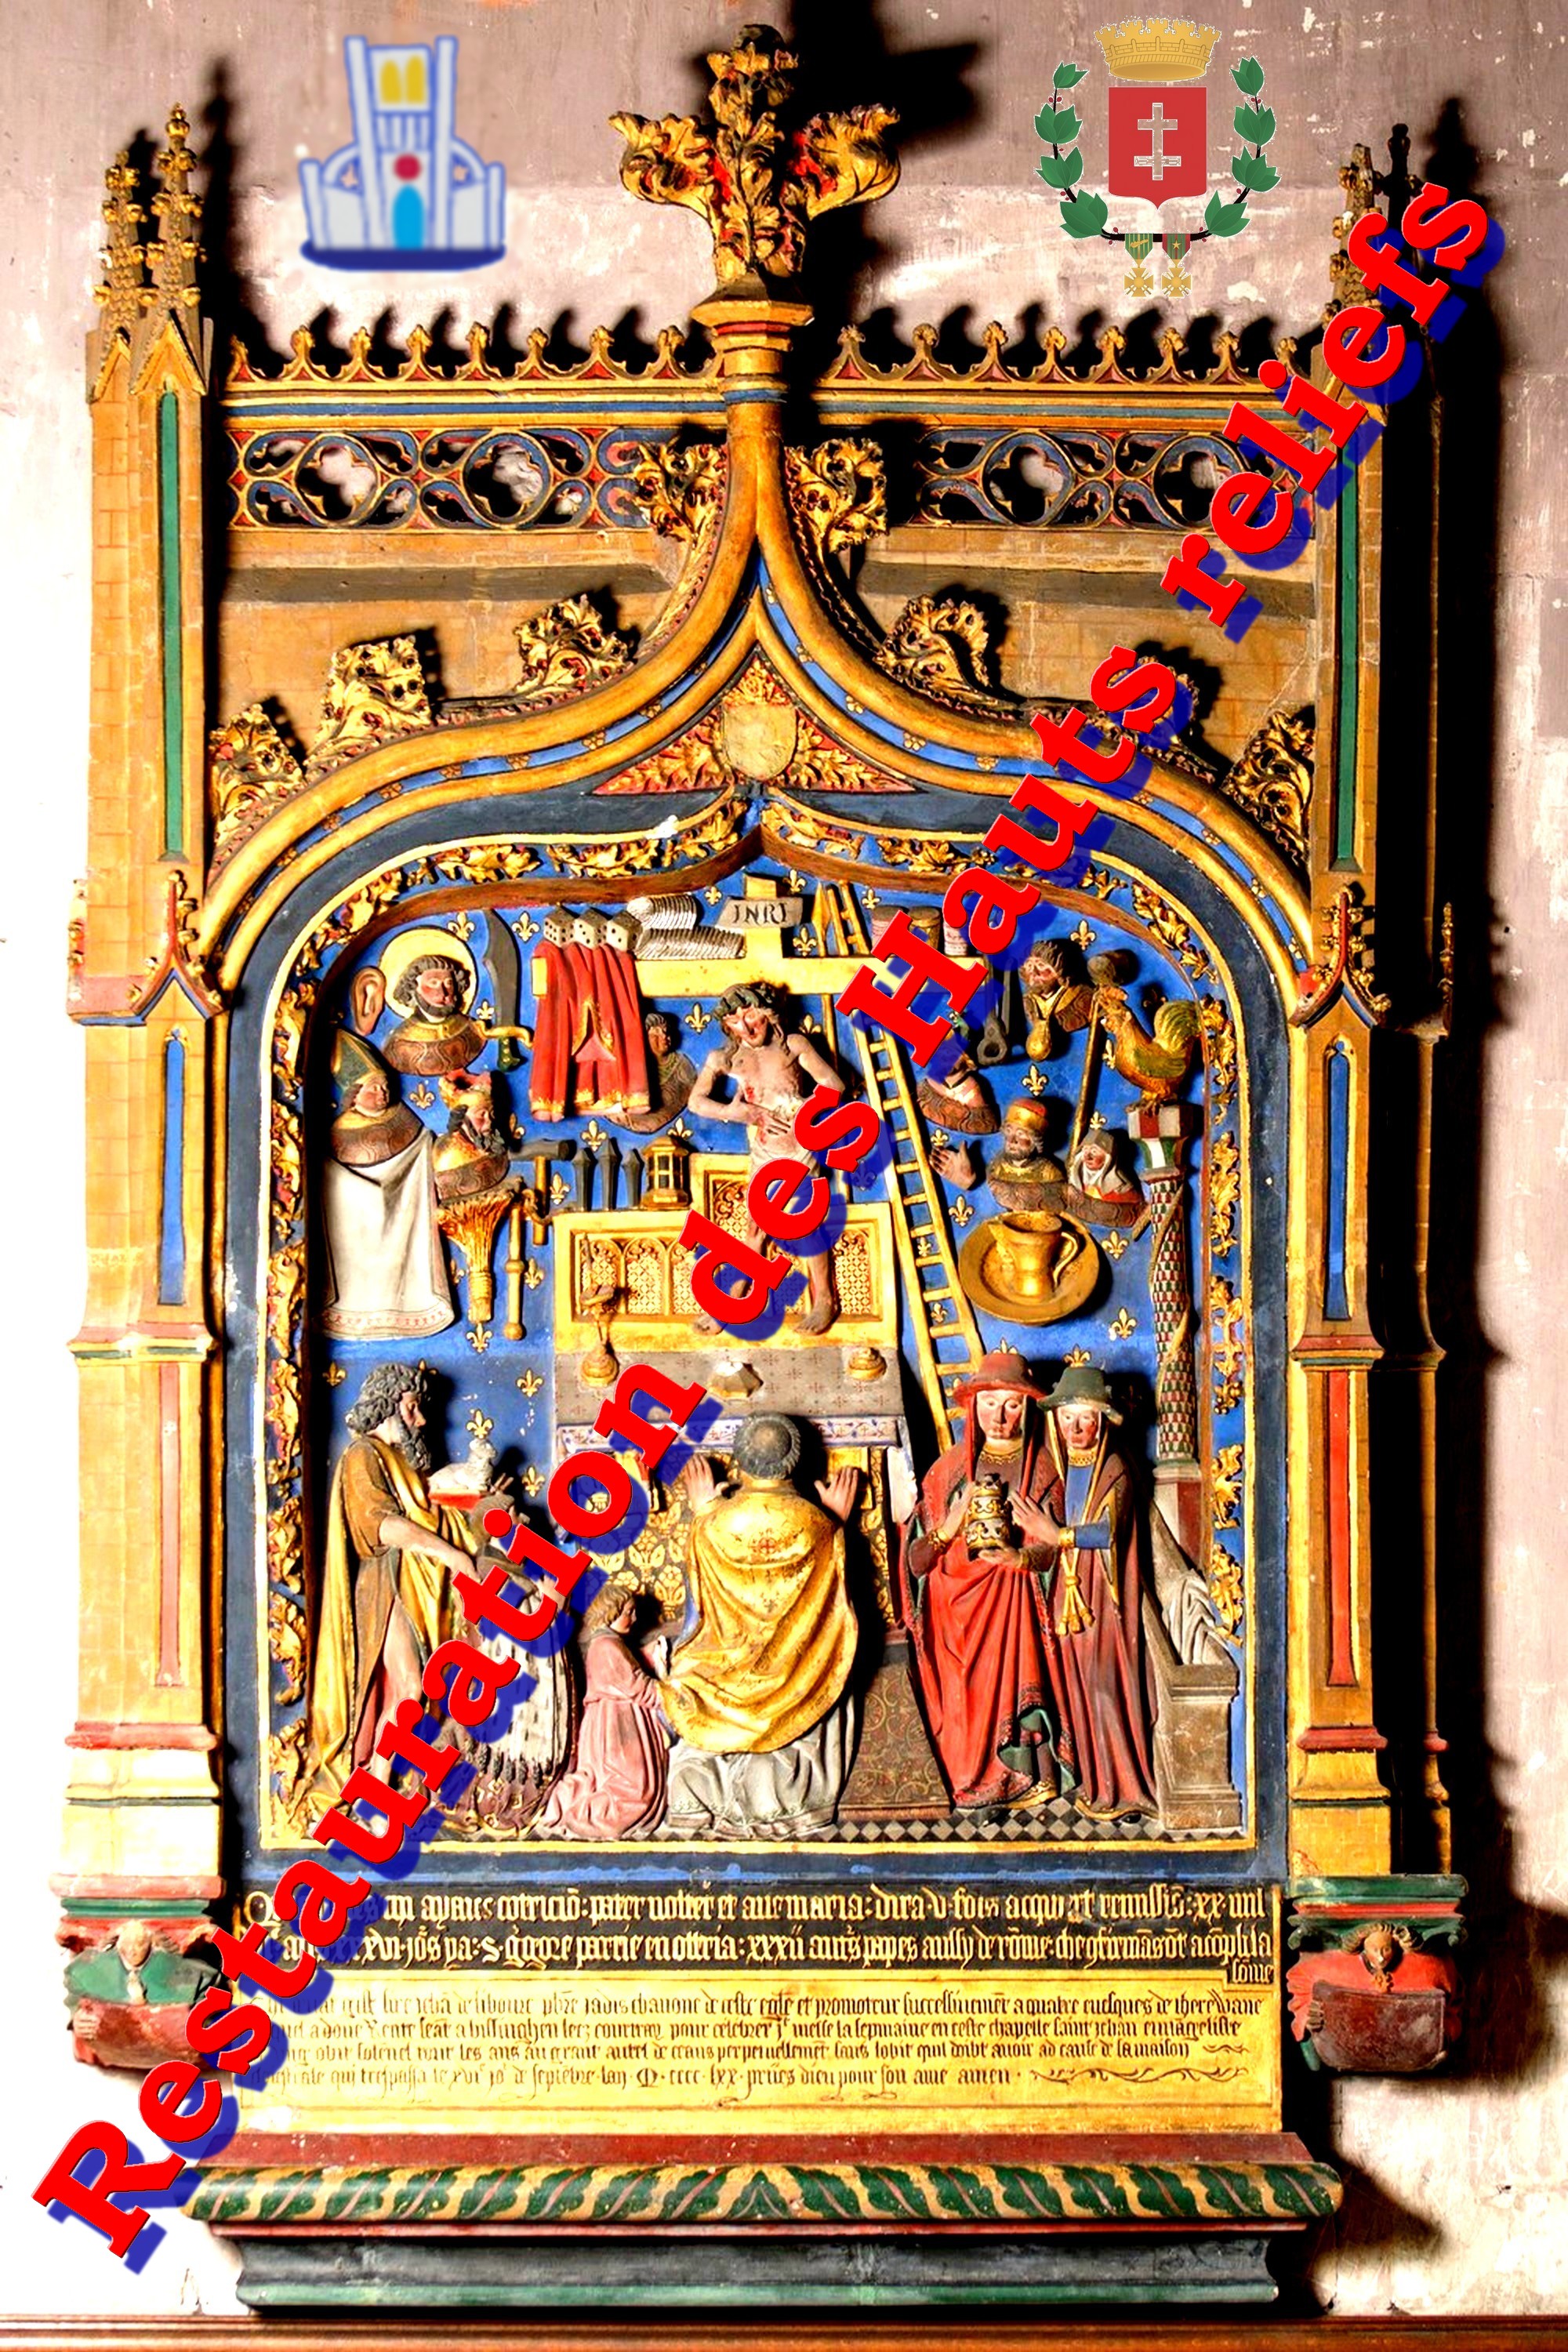 Déambulatoire travée 06 - monument funéraire de Jean de Libourc (bas-relief) 1470